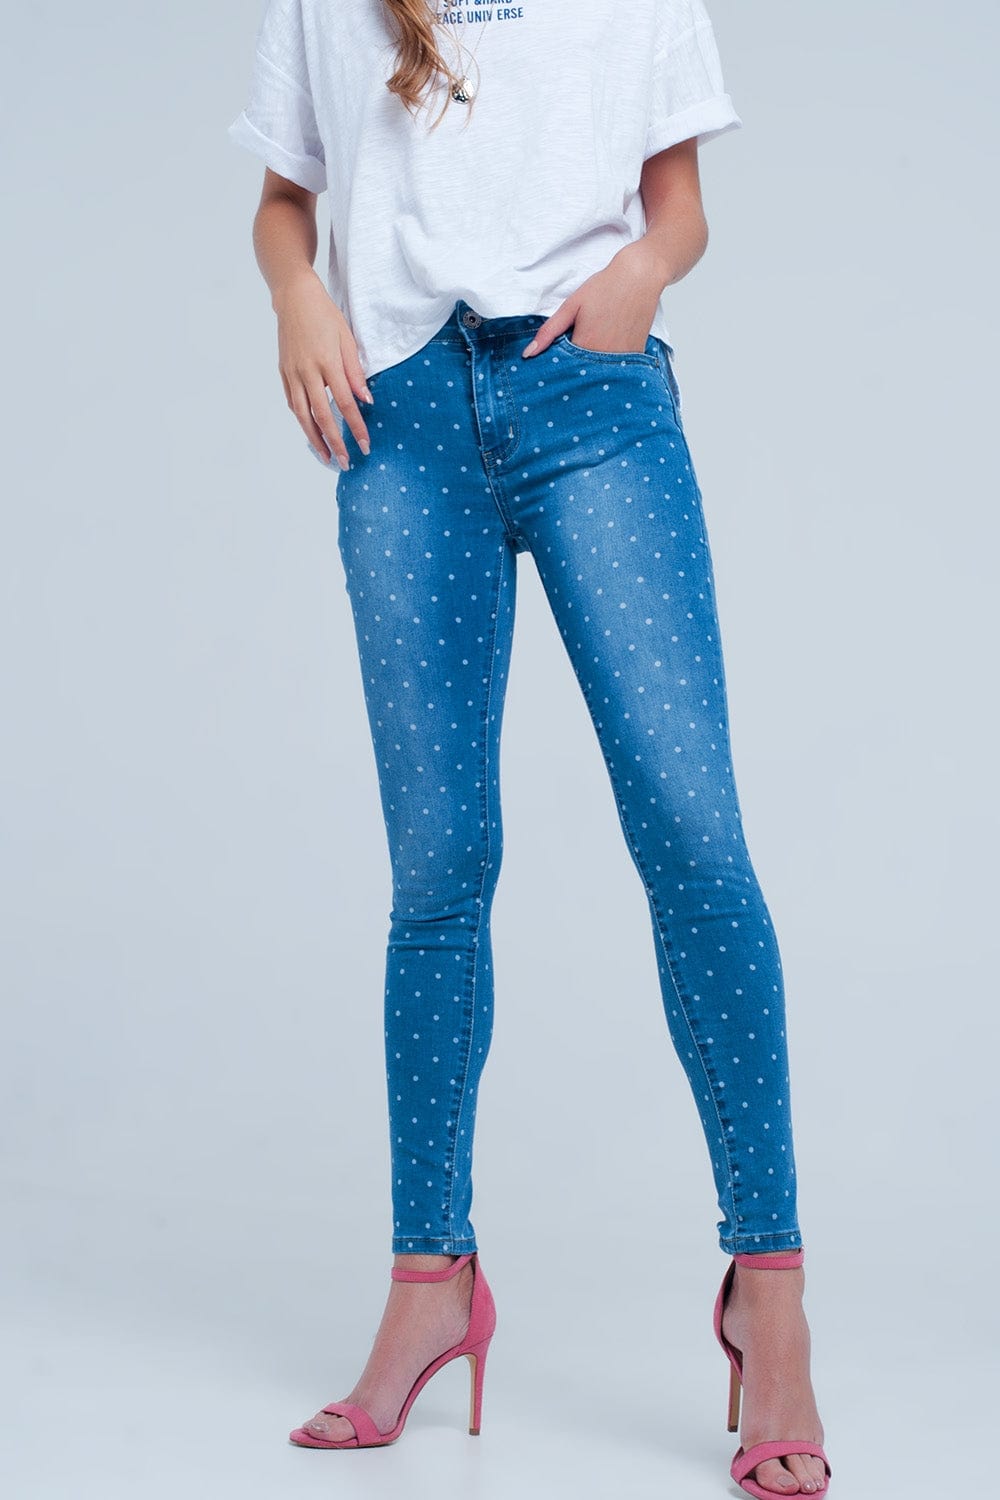 Q2 Women's Jean Skinny Jeans in Polka Dot Print